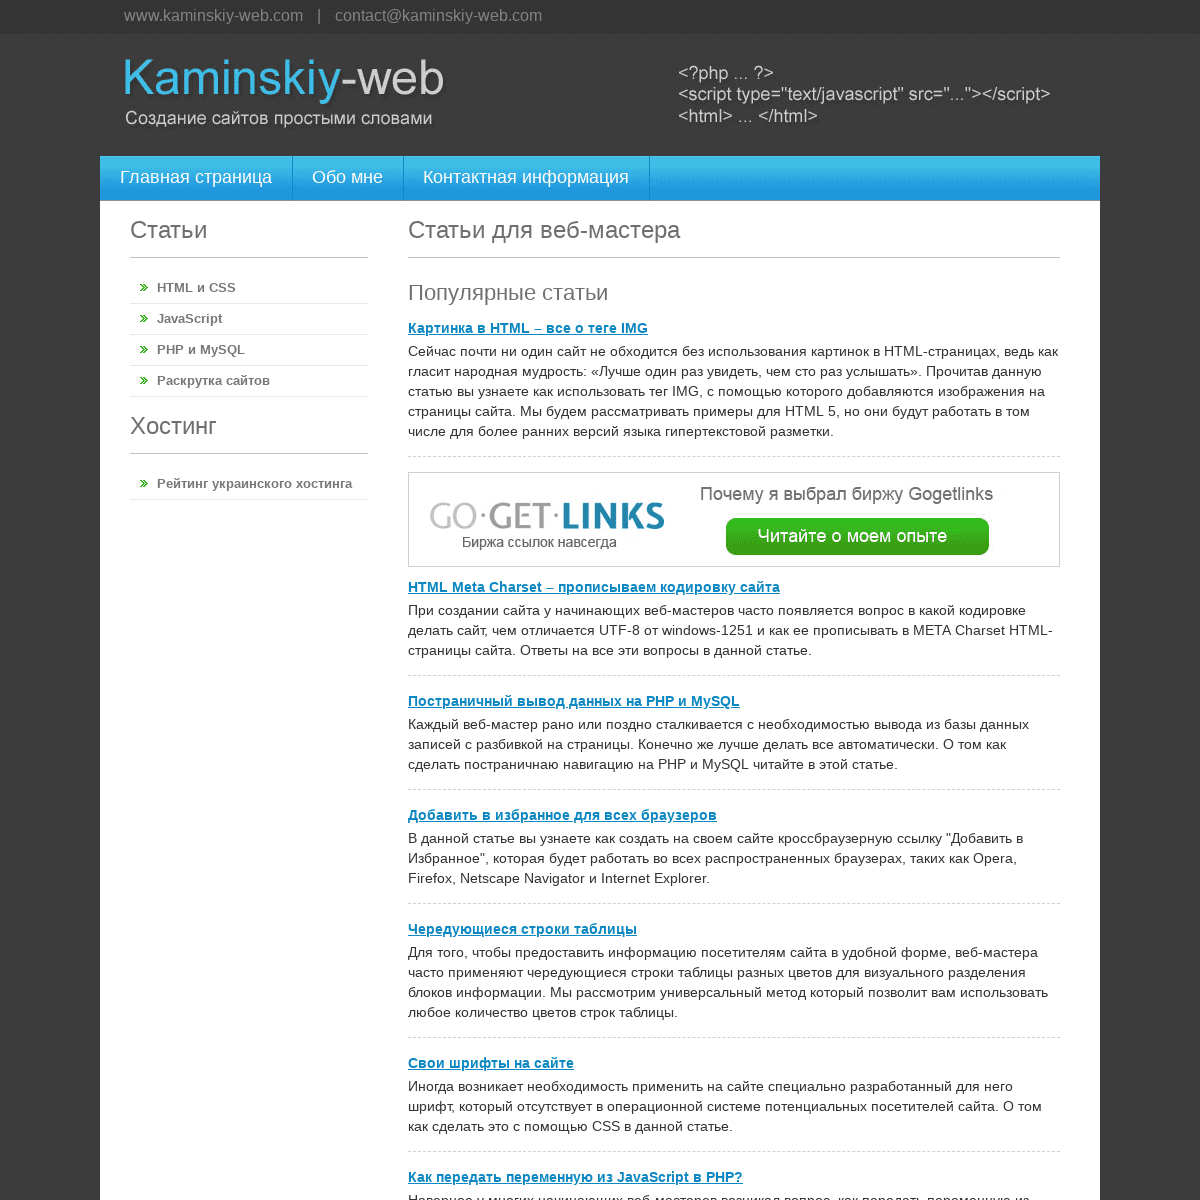 Статьи для веб-мастера - Kaminskiy-web